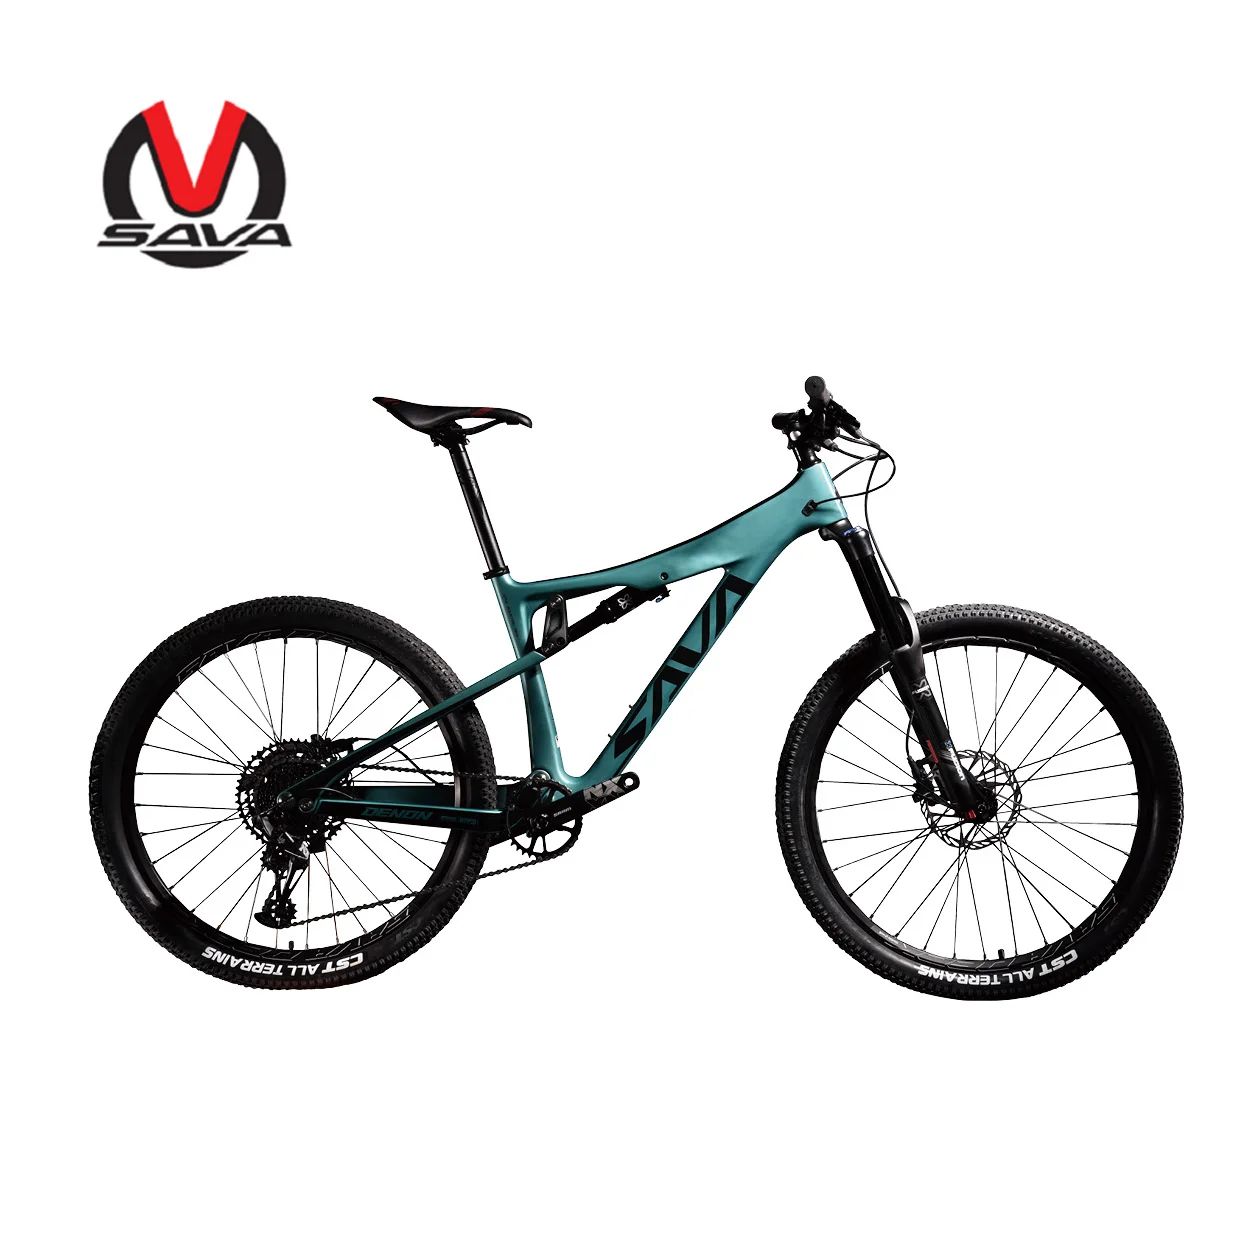 

SAVA 27.5 FULL SUSPENSION carbon fiber MTB bike T700 carbon fiber frame mountain bike, Black blue, black yellow, black white